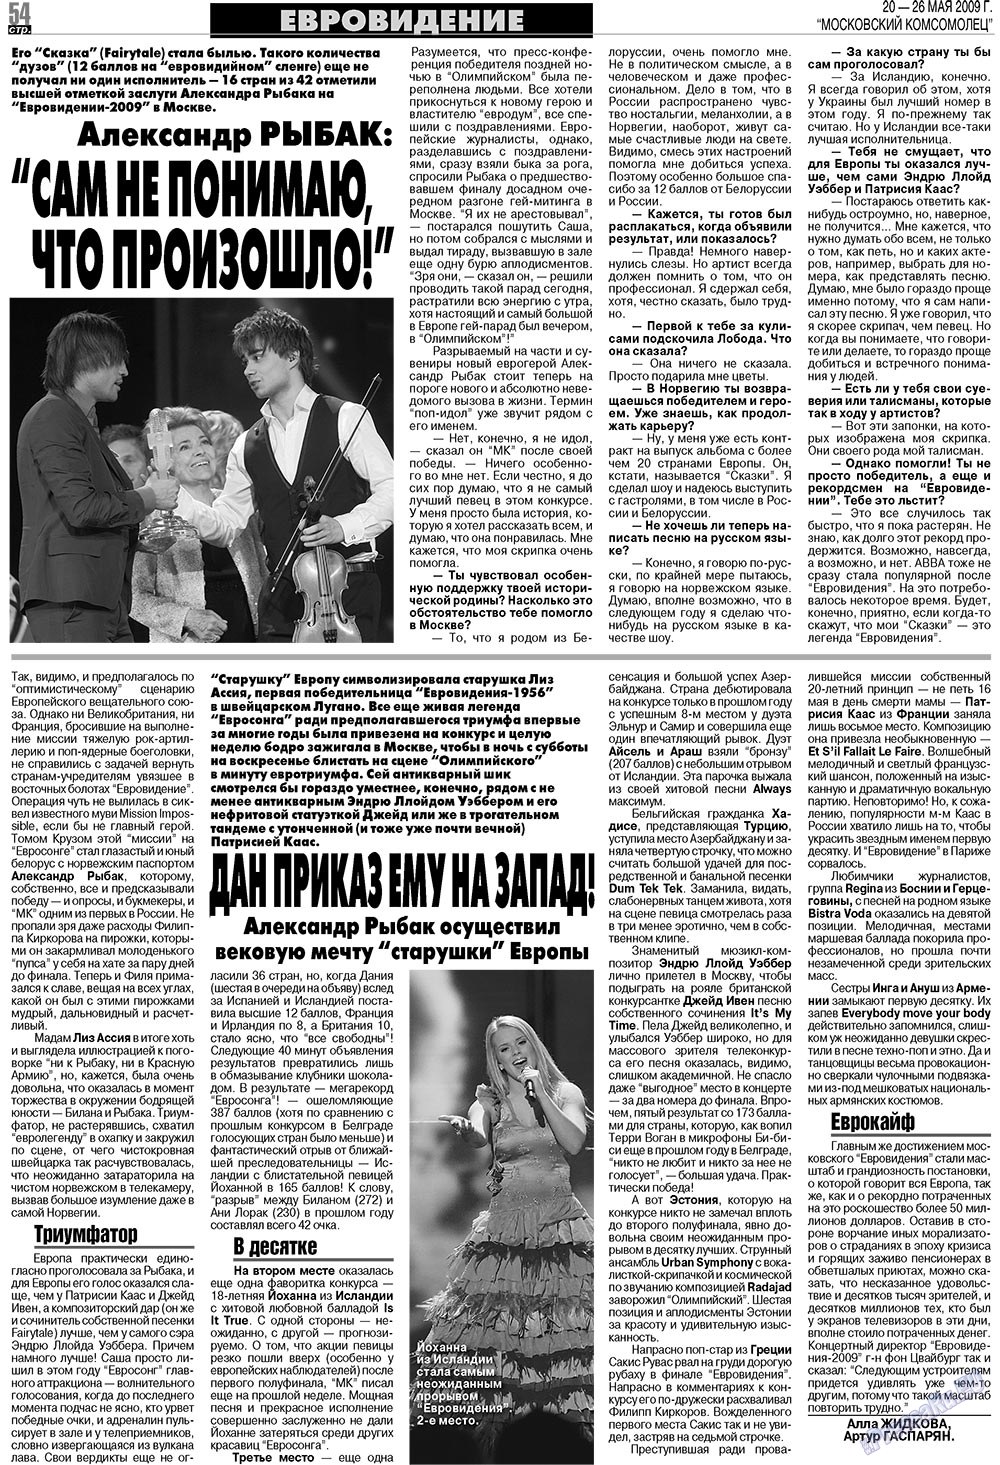 МК Испания, газета. 2009 №21 стр.54